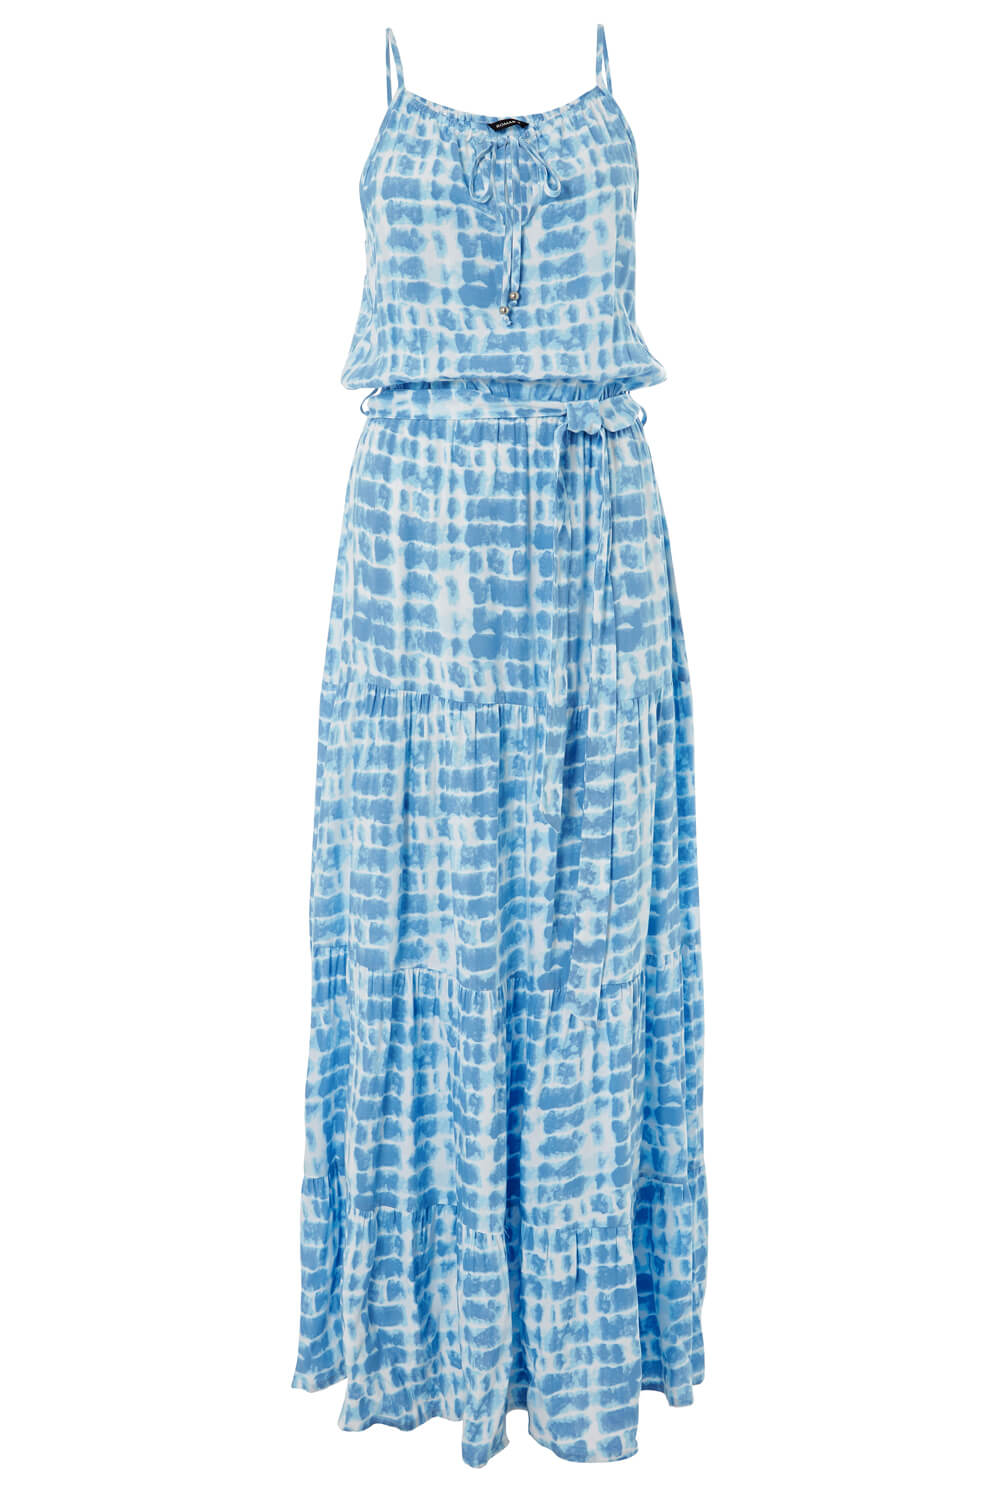 Tie Dye Tiered Maxi Dress in Blue - Roman Originals UK